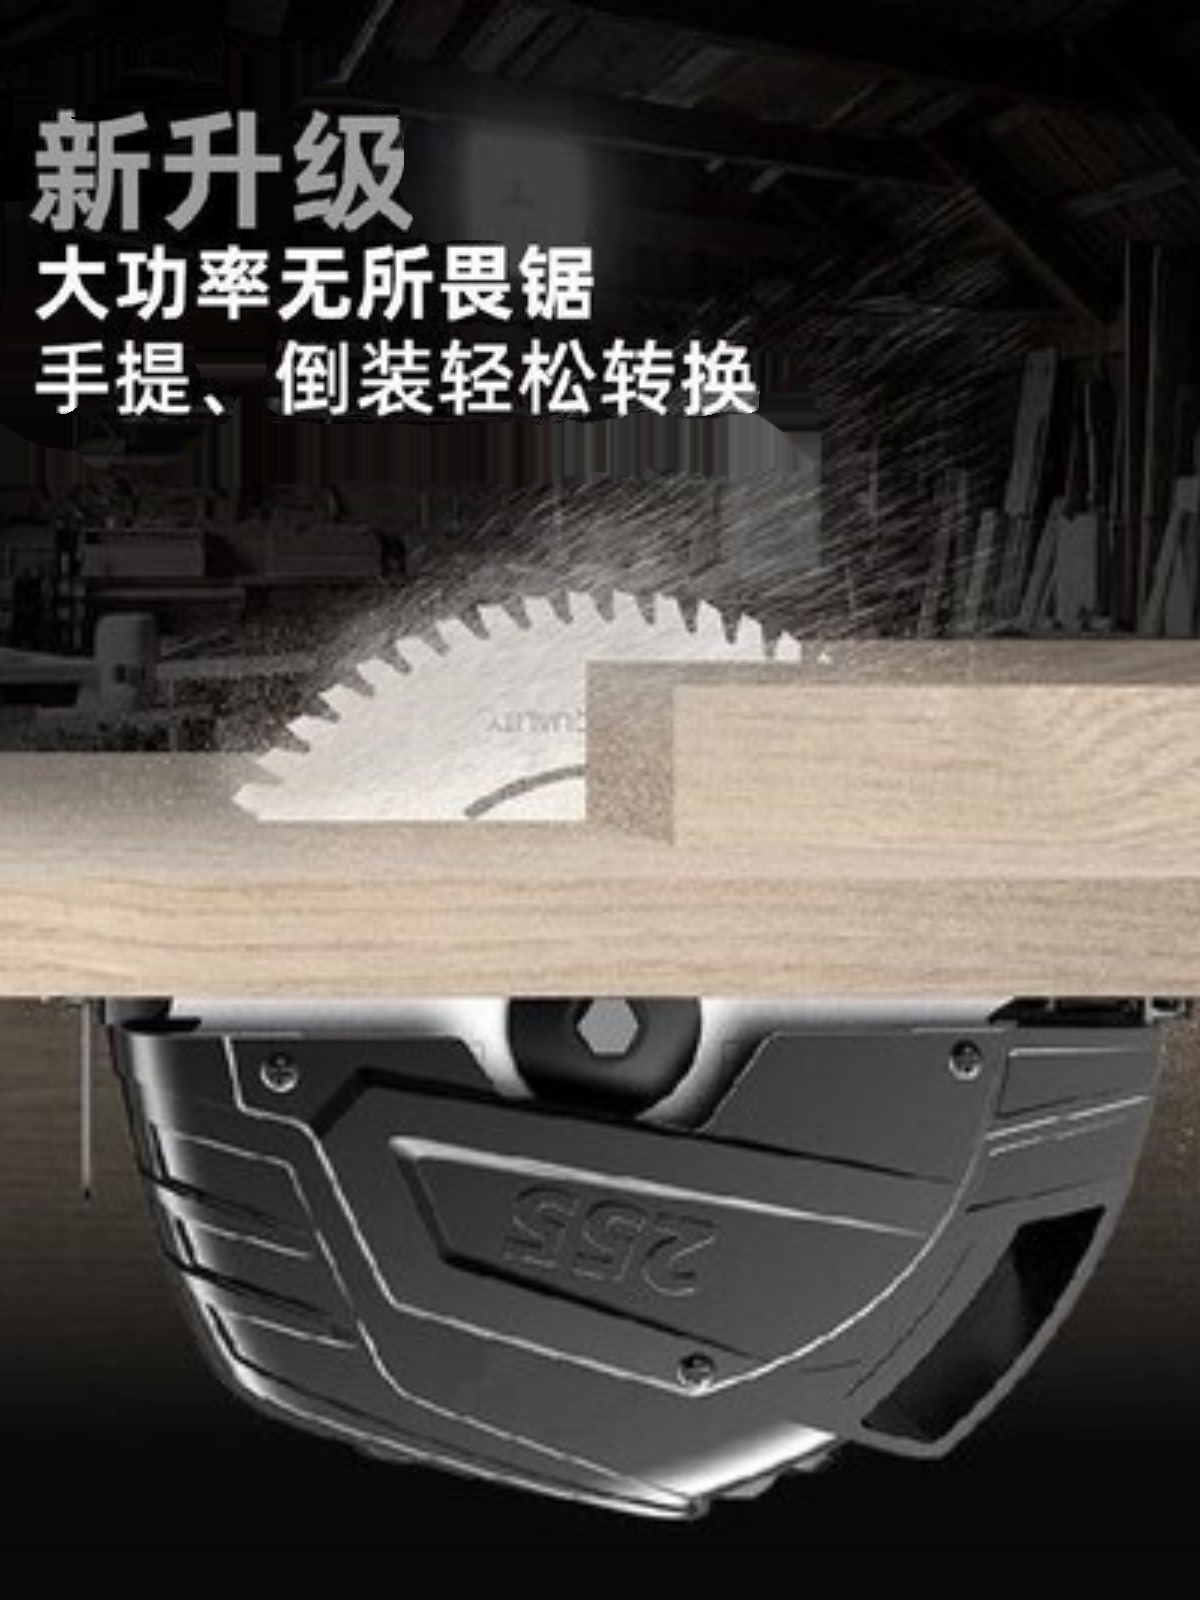 新品板材大功率电锯家用小型手持台锯圆盘锯电园锯电动石材木材伐